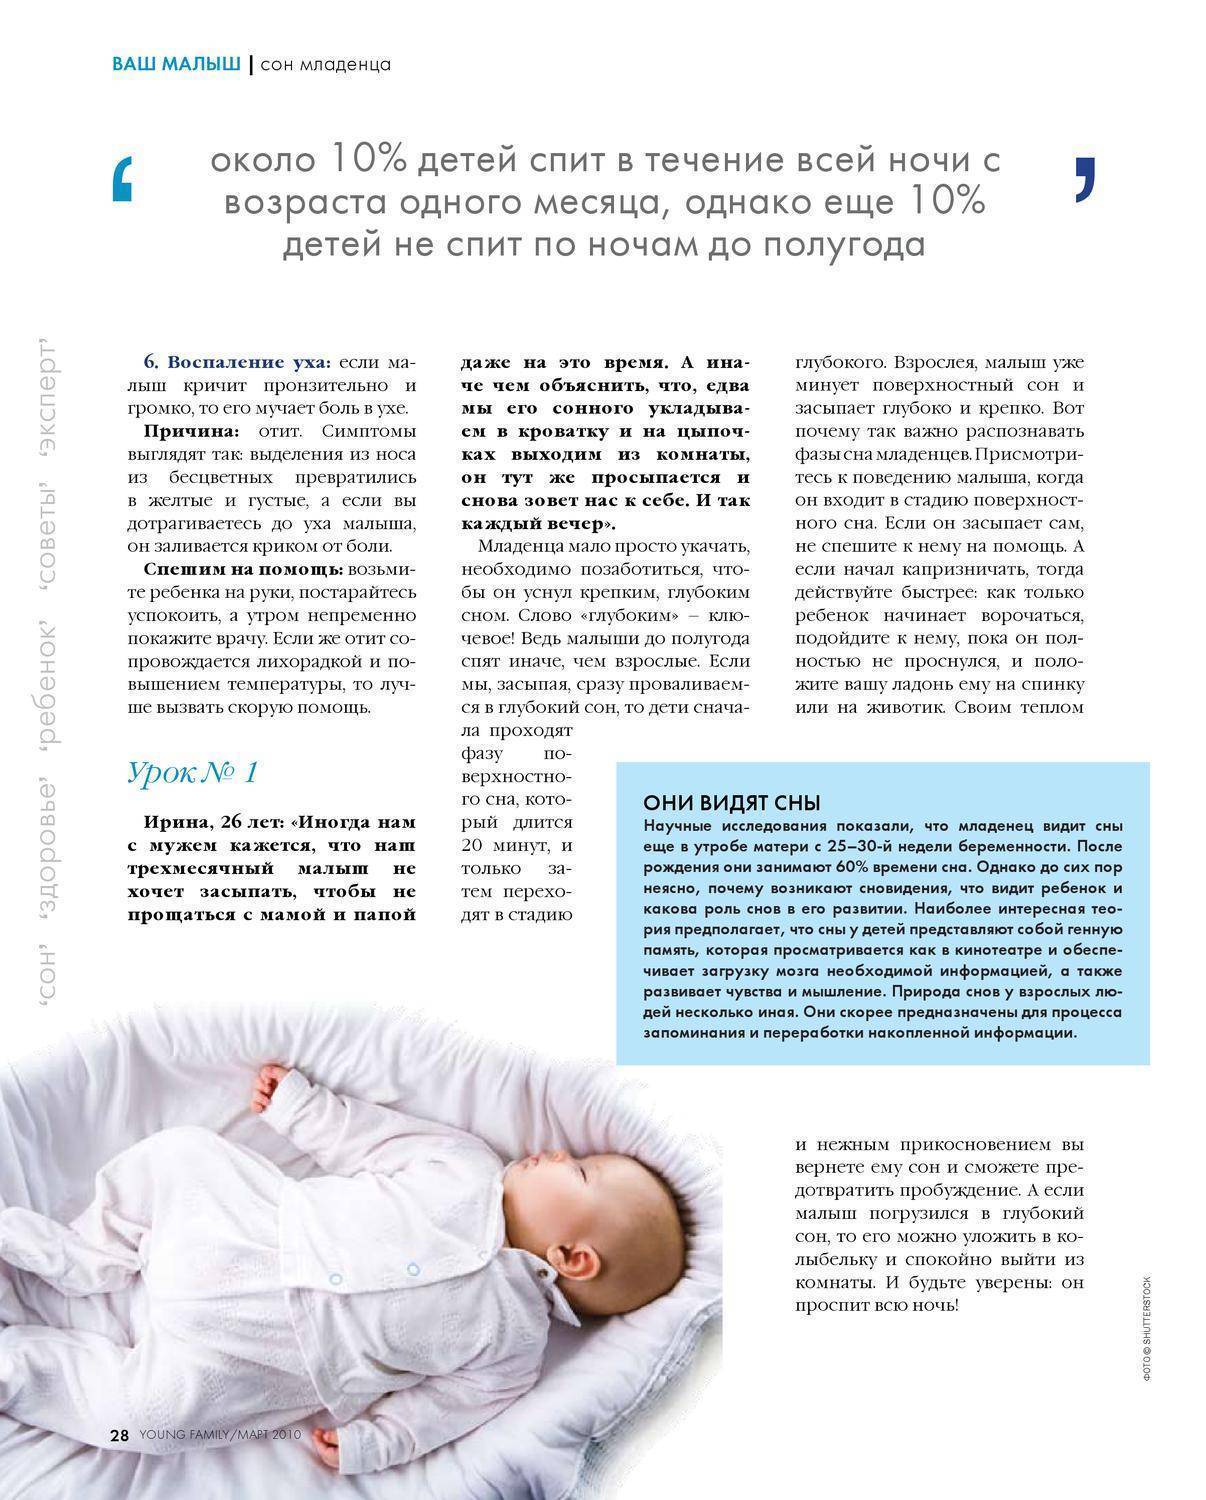 Как научить младенца спать всю ночь и причины которые могут помешать